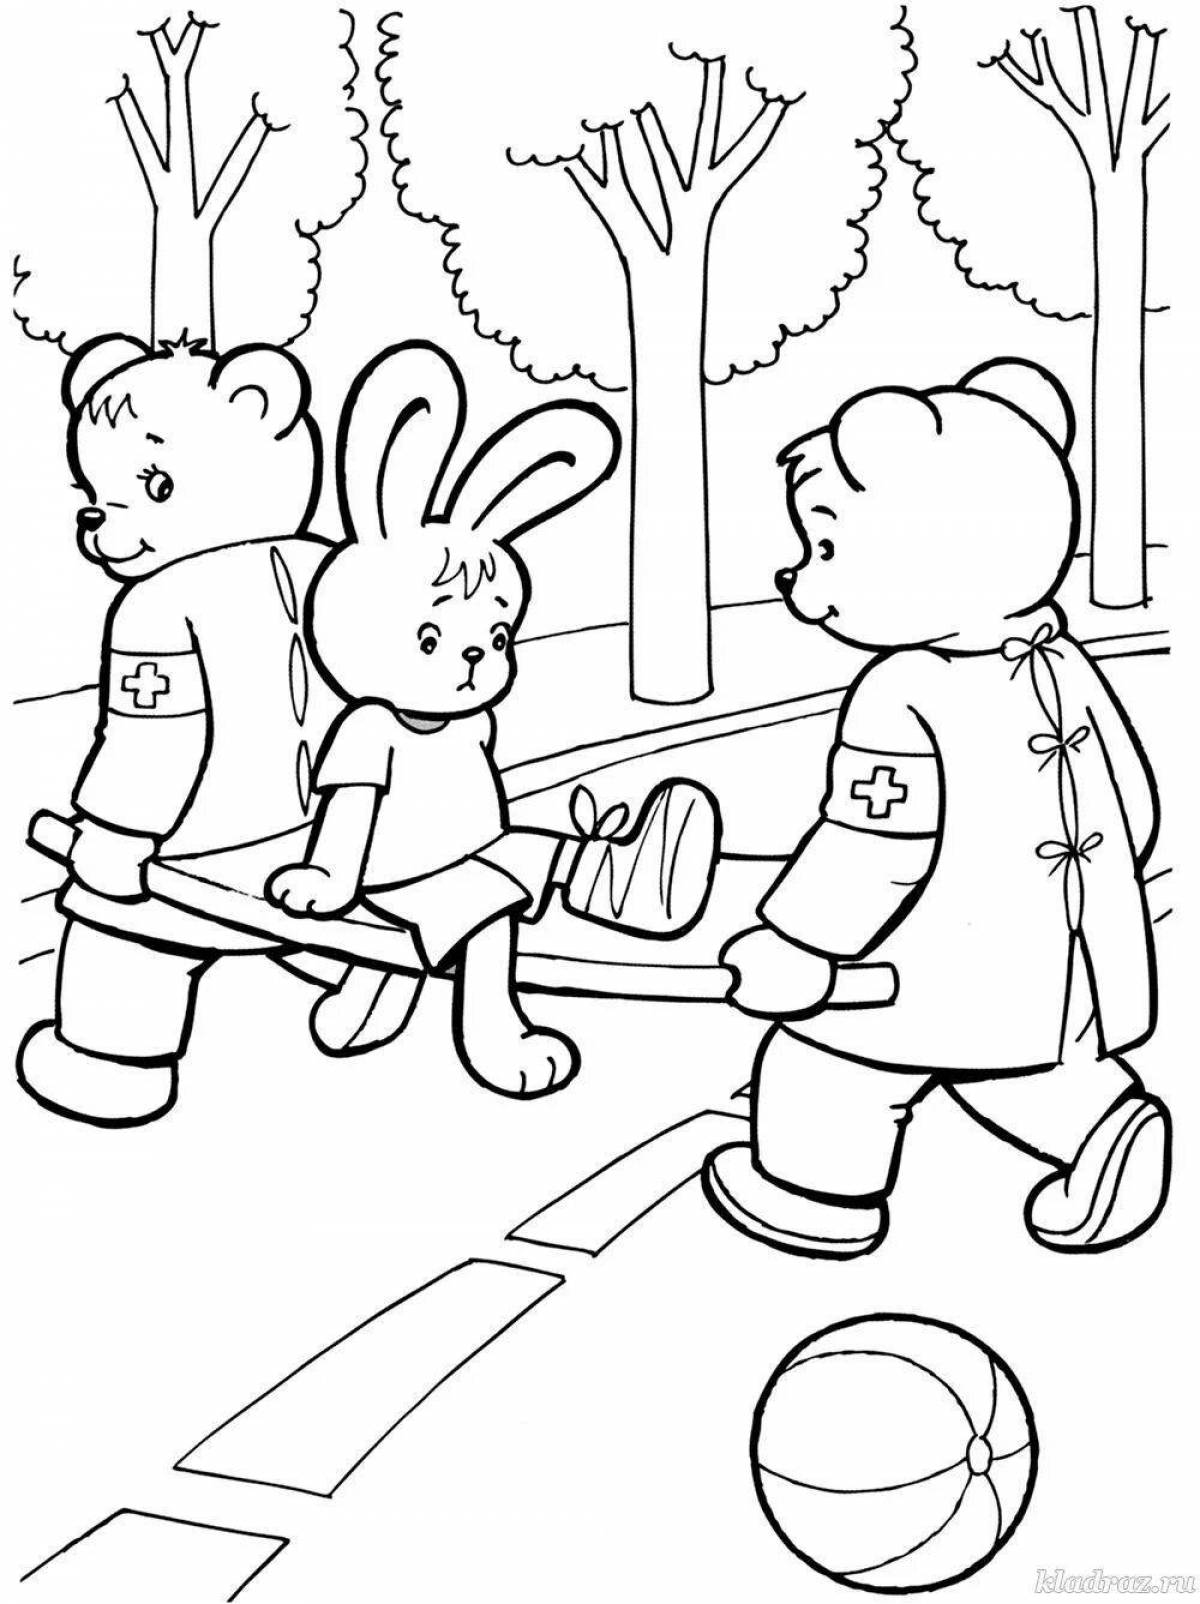 On ABC Preschool Safety #12